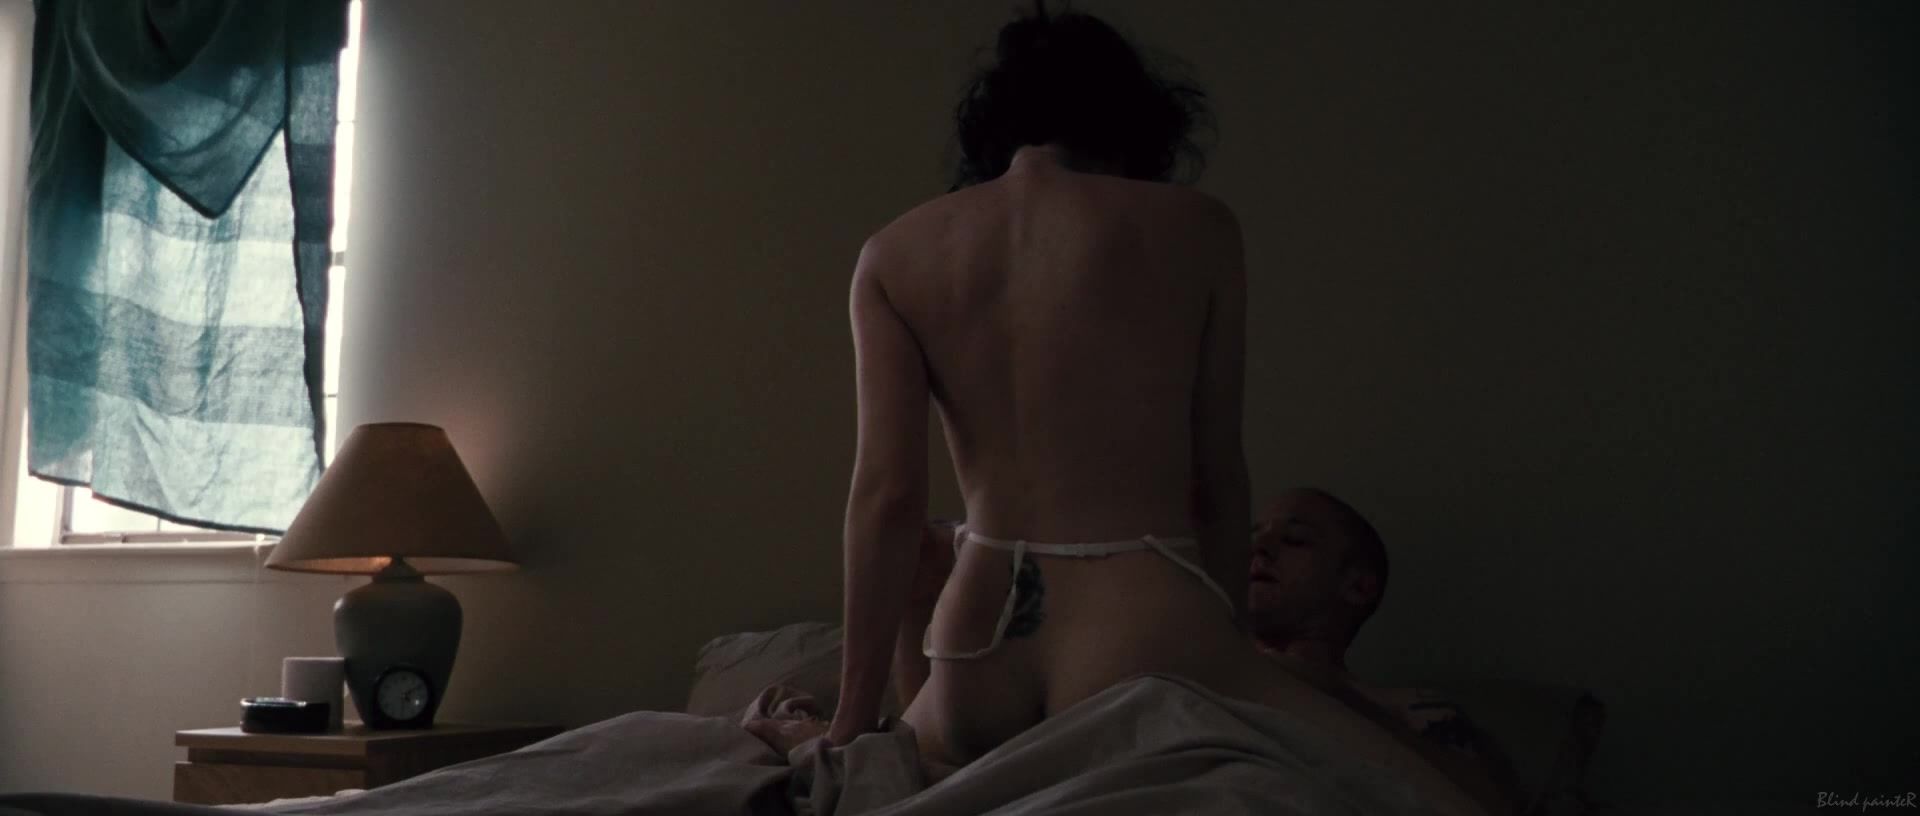 Amateurs Jena Malone, Lisa Joyce nude - The Messenger (2009) Gritona